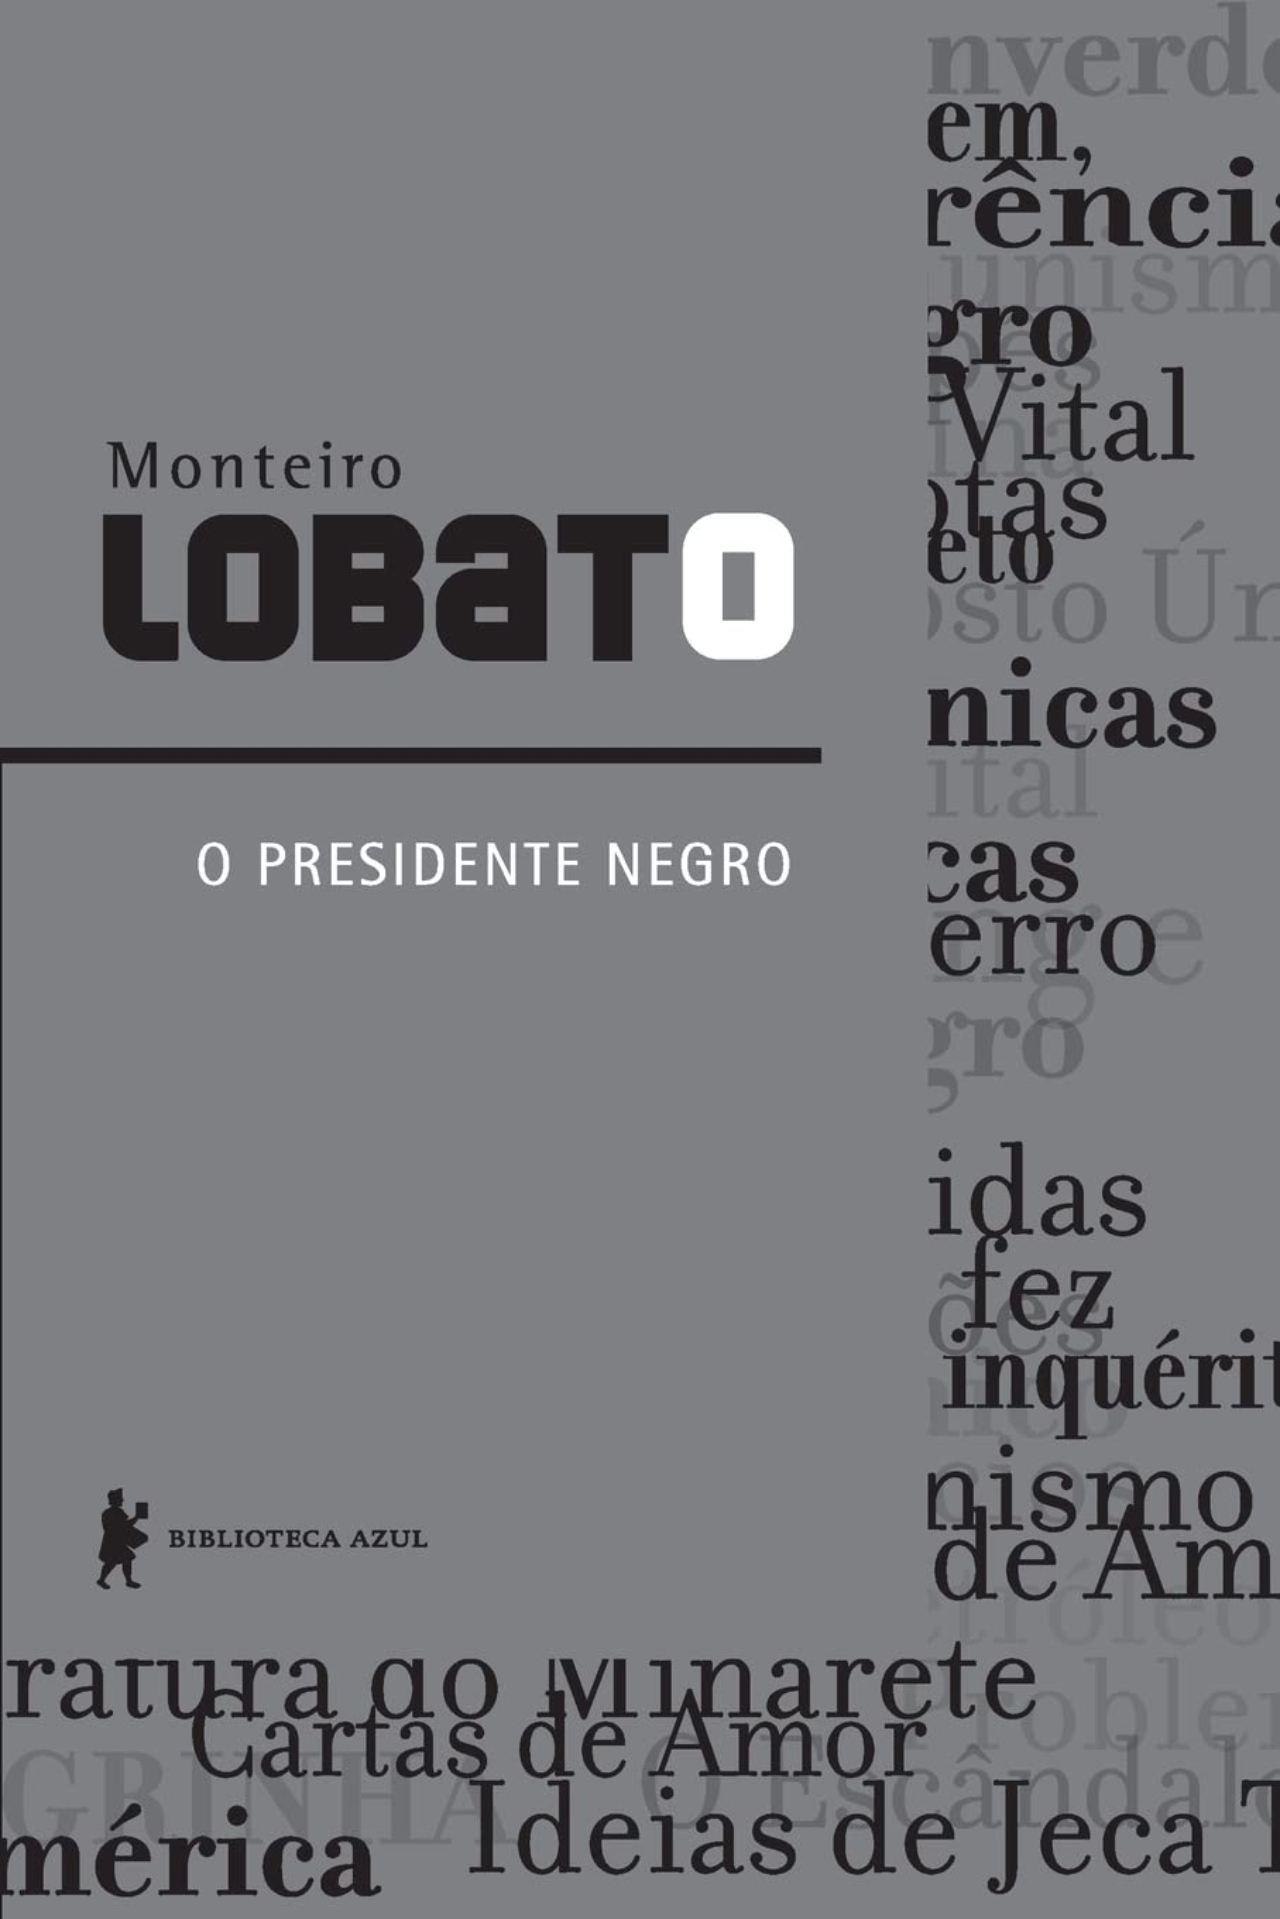 Livro 'O Presidente Negro', de Monteiro Lobato